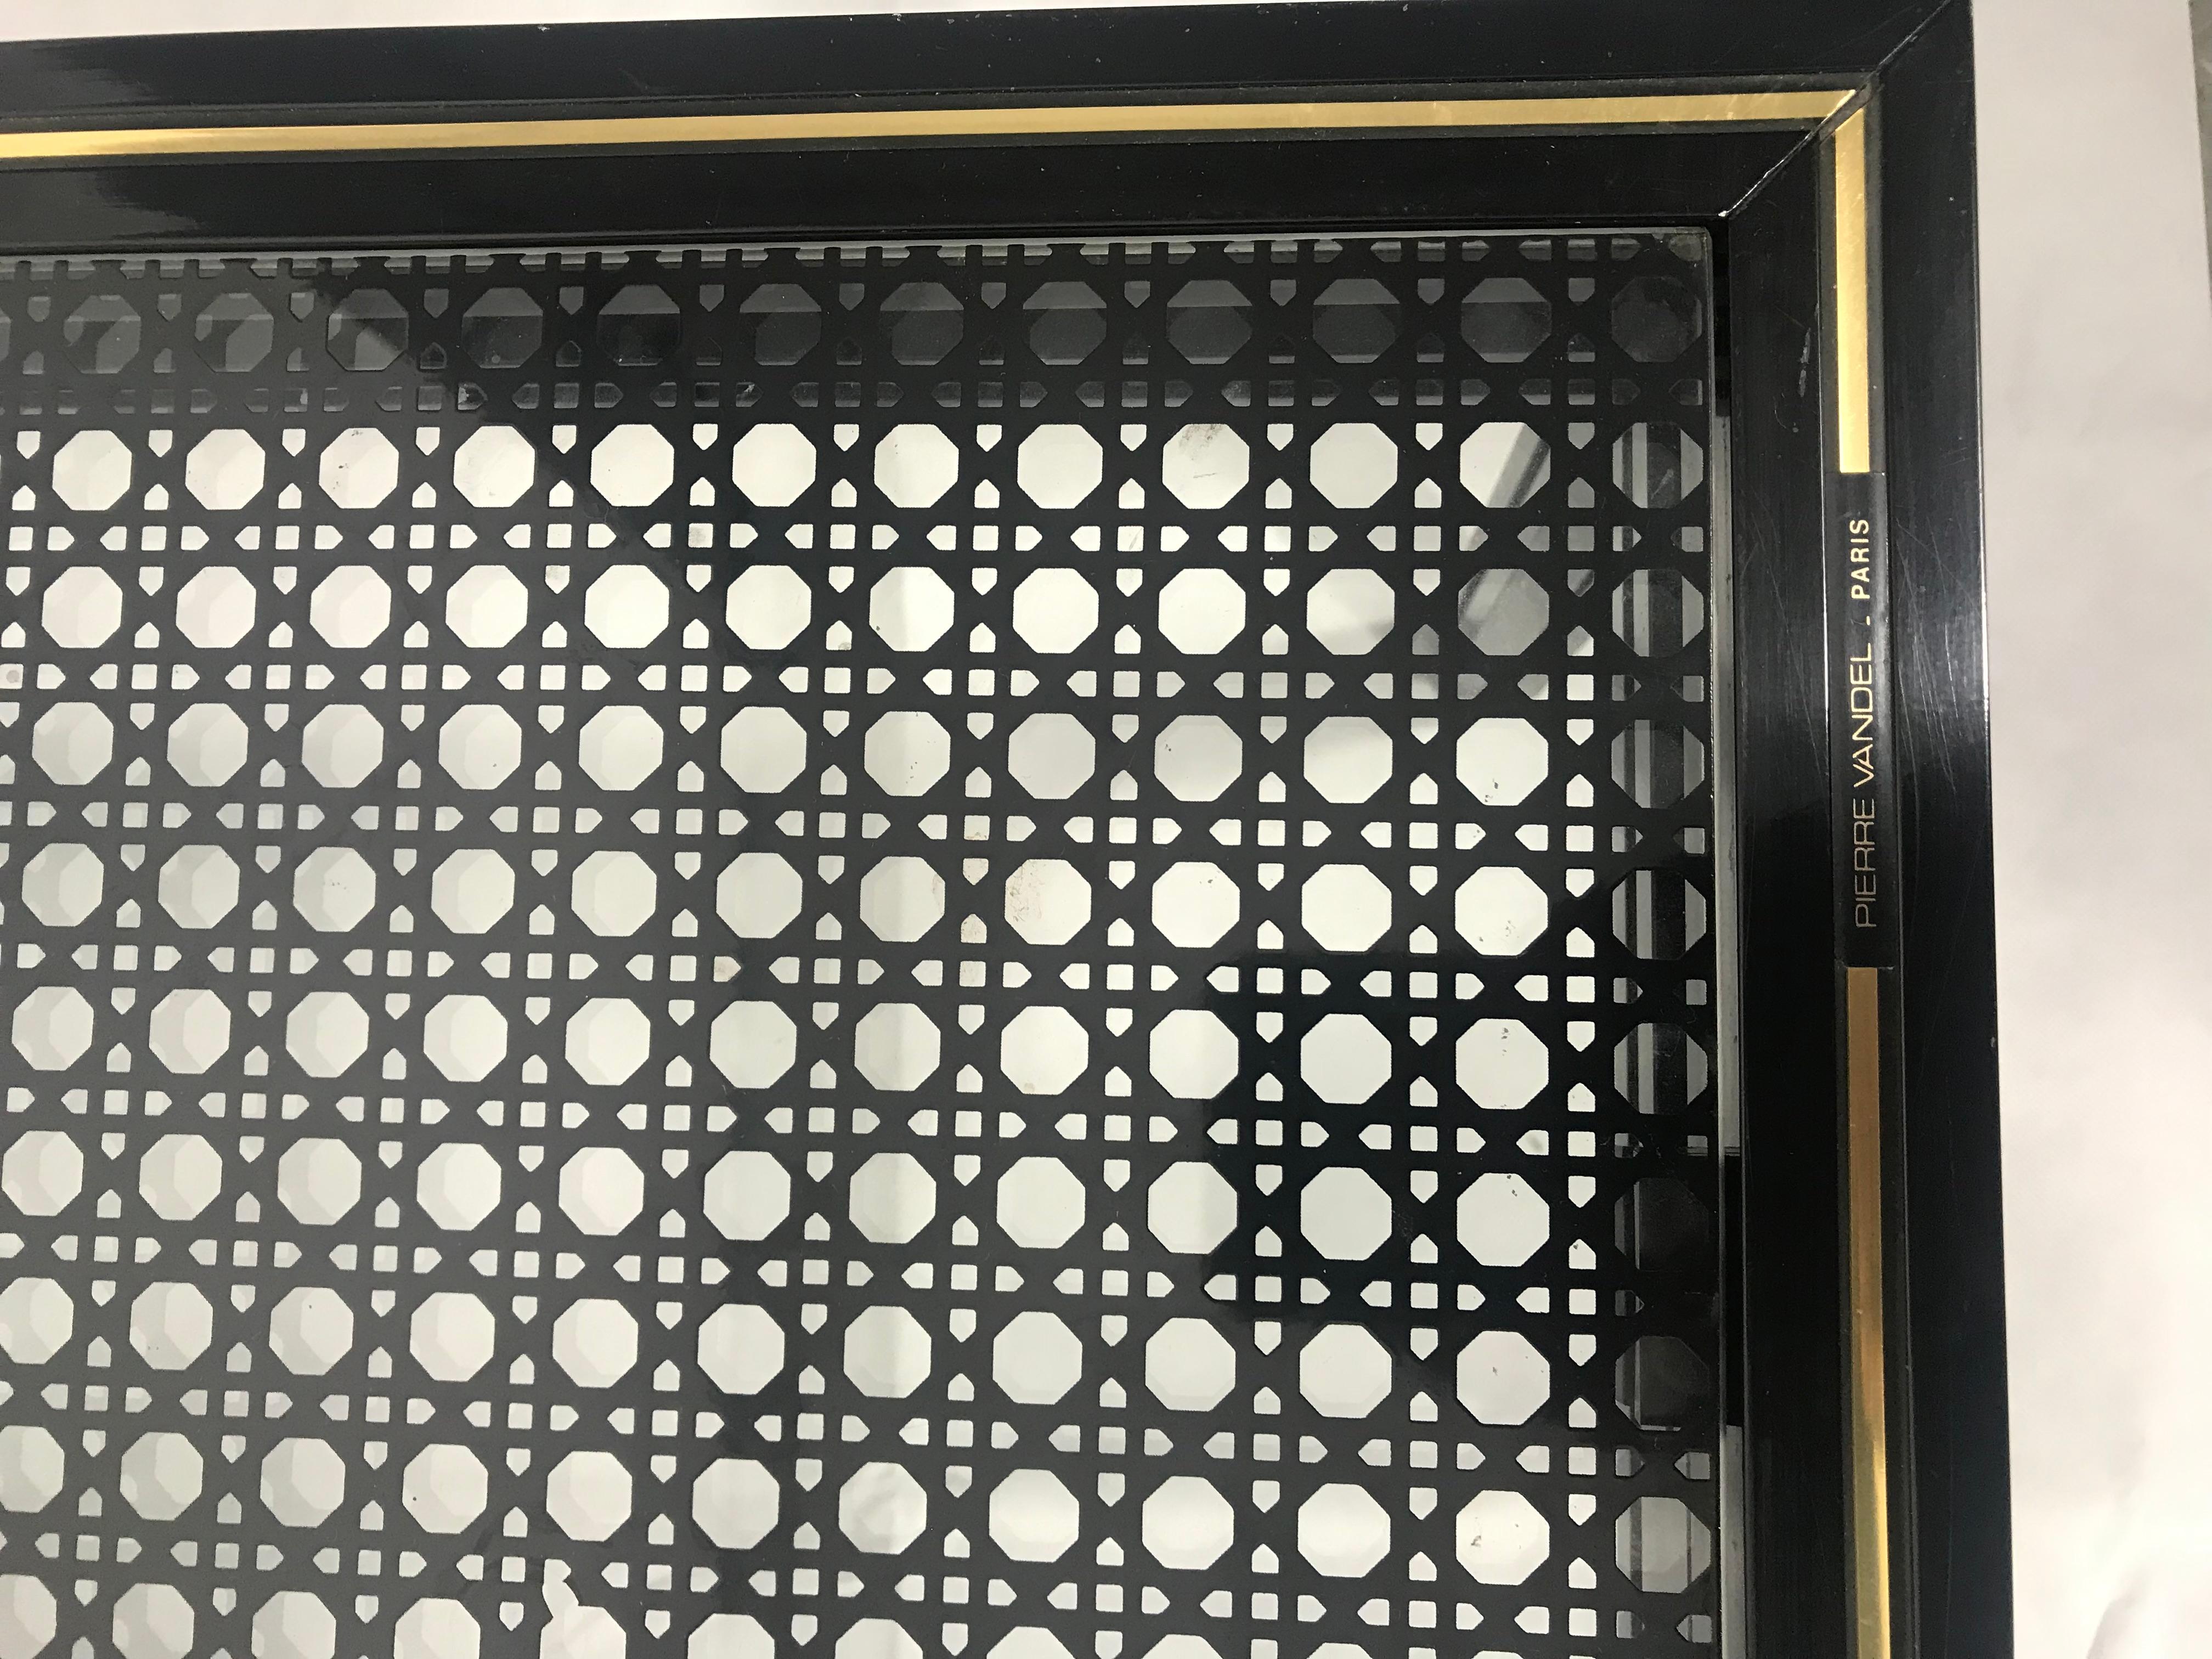 Table basse noire et dorée, signée Pierre Vandel, modèle plutôt rare et iconique, avec le verre à motifs cannage noirs, bon état, quelques traces légères laissé par le temps. Dimensions: Longueur 105, 5 cm. Profondeur 54, 5 cm. Hauteur 33, 5